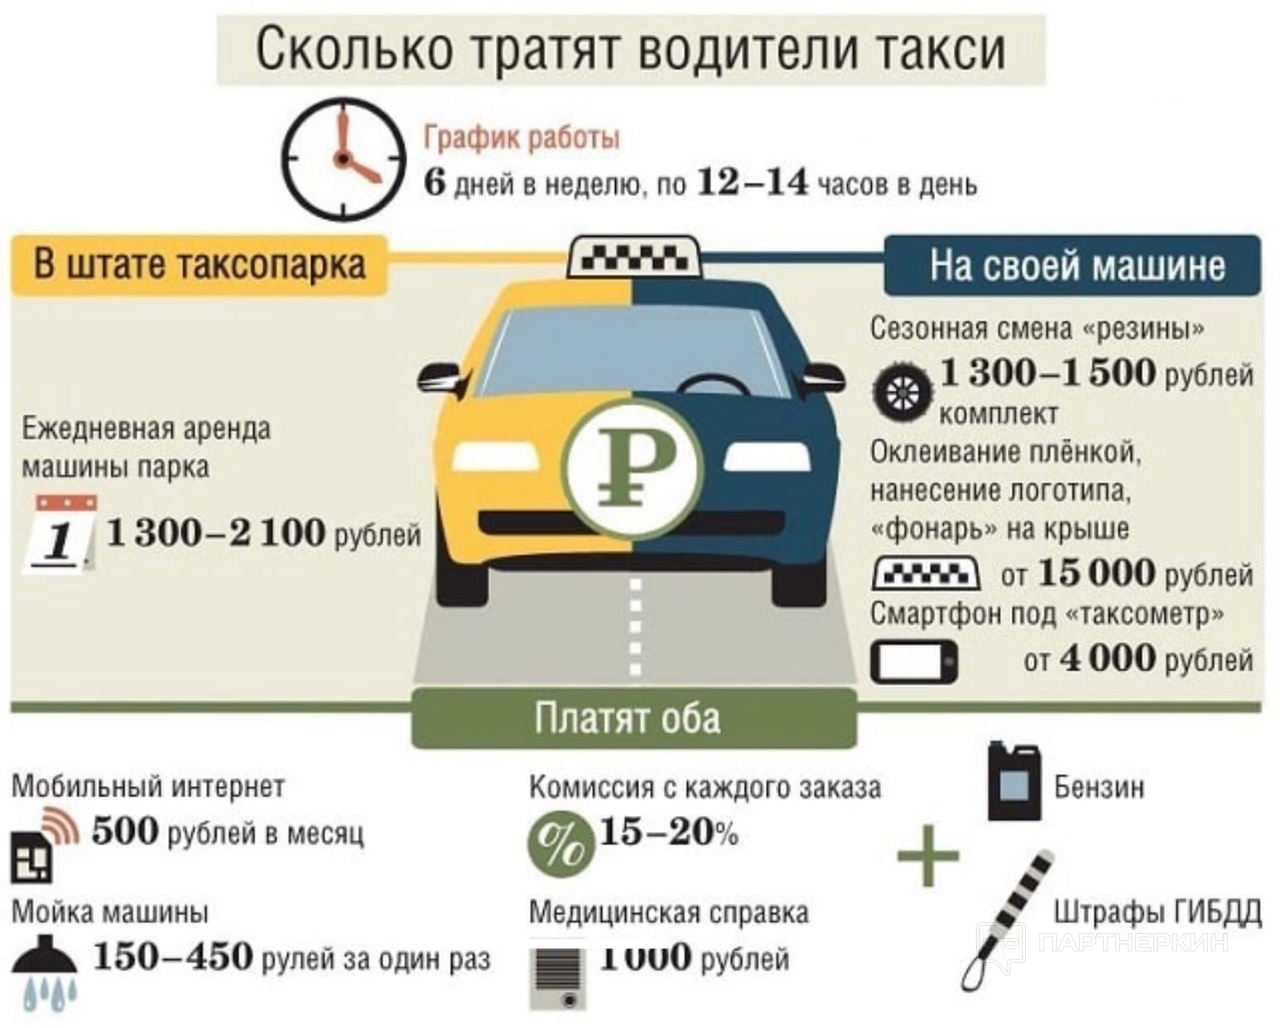 Сколько в день можно заработать в такси. Каким машинам Монжа таксават. Сколько будет стоить такси. Количество таксистов в Москве. Своя машина в такси.